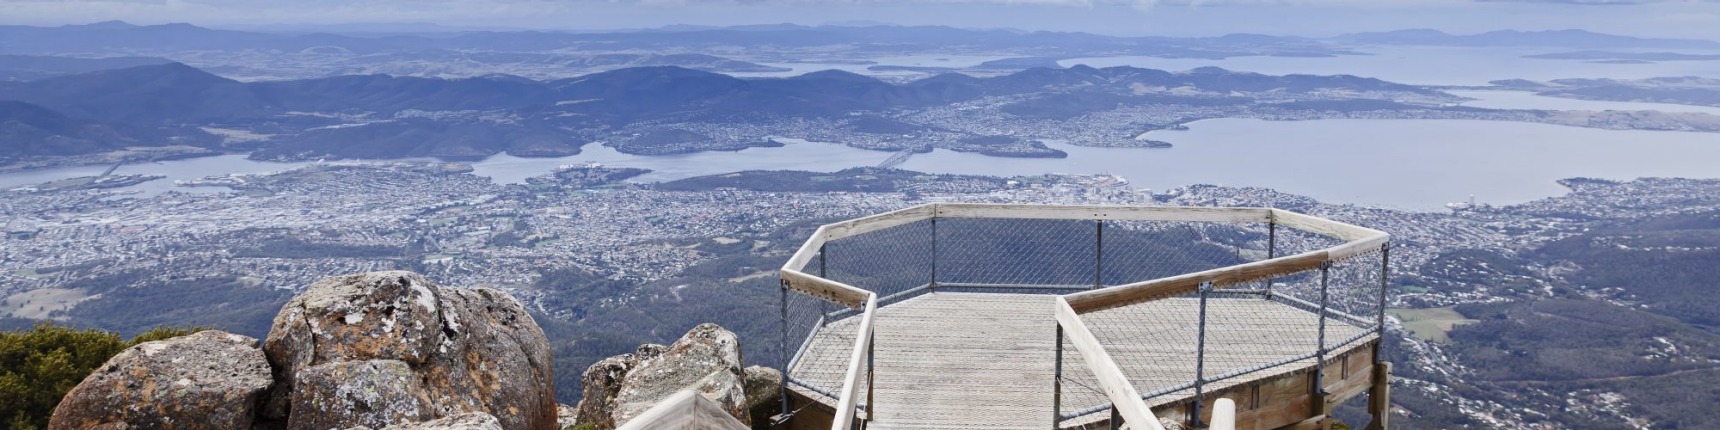 Hobart, Mount Cook view